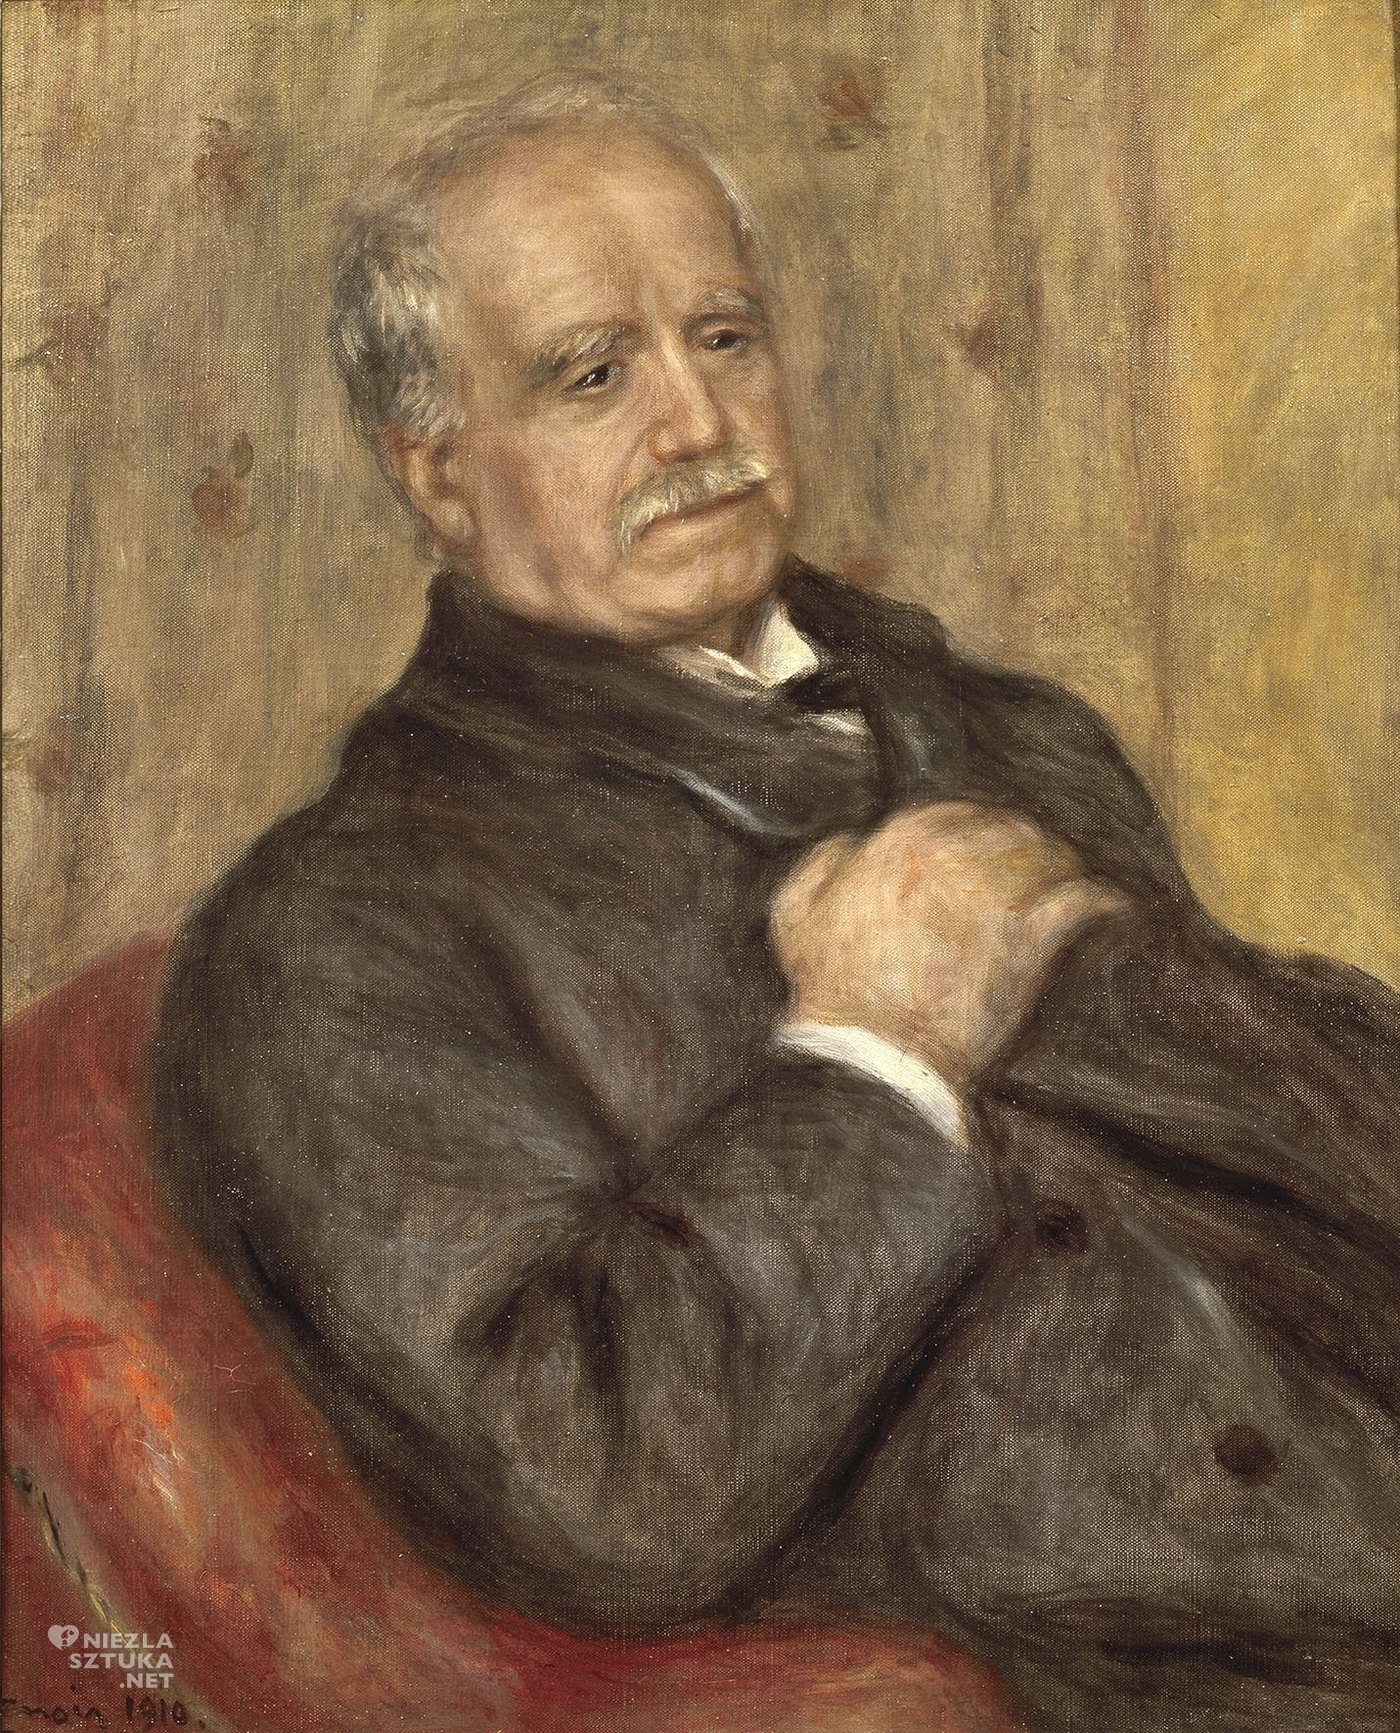 Pierre-Auguste Renoir Paul Durand-Ruel